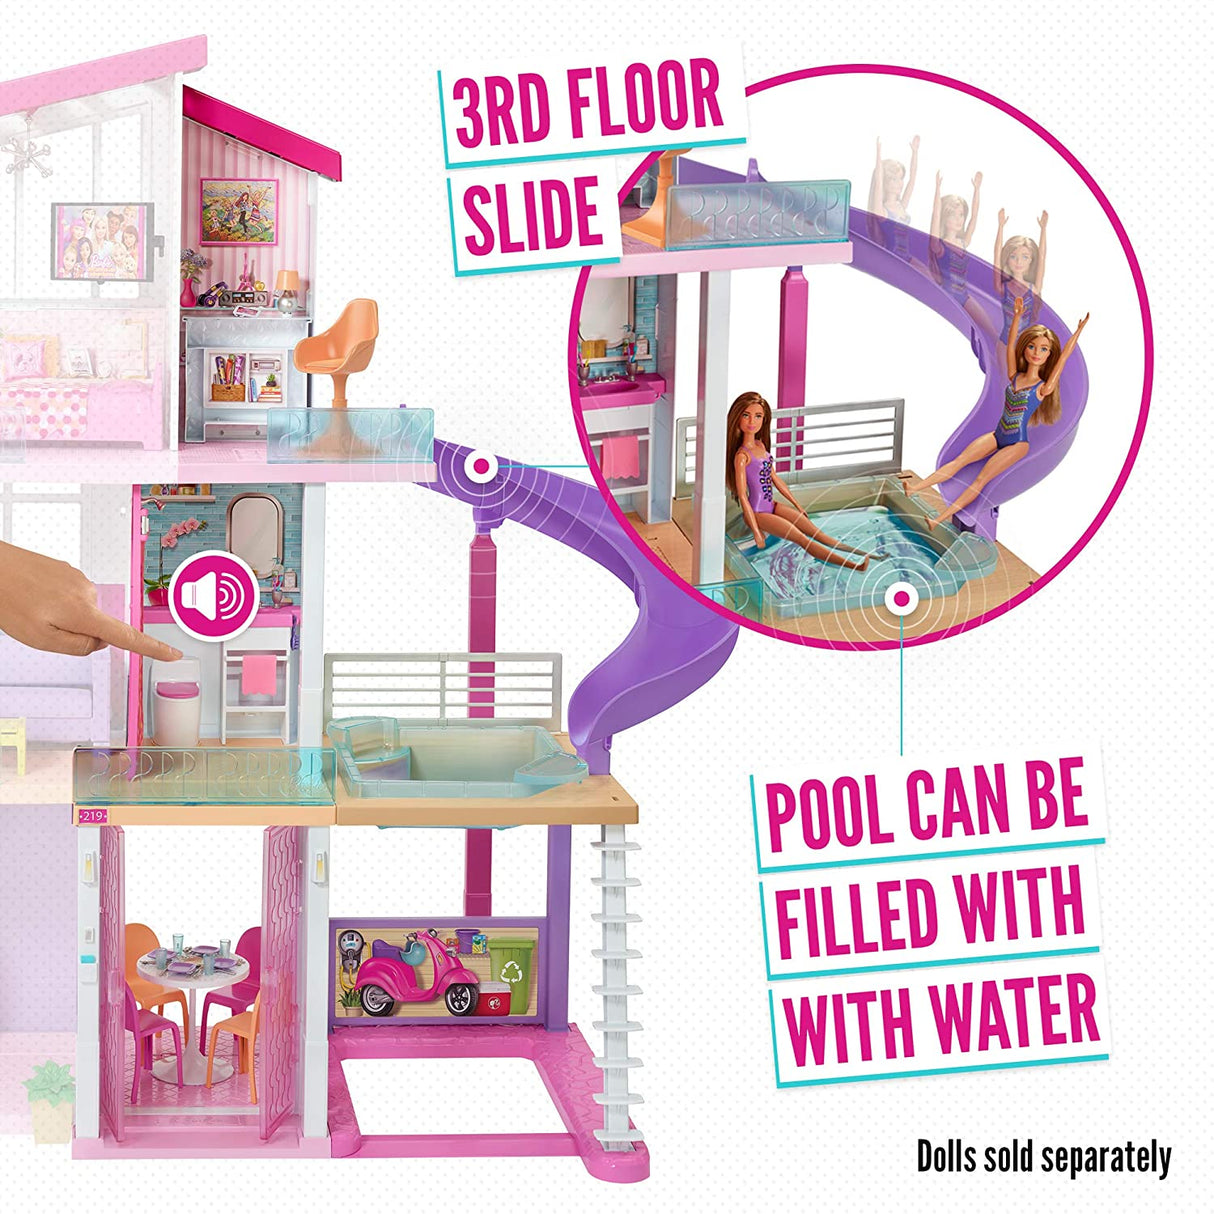 Descubra a nova Mega Casa dos Sonhos da Barbie!